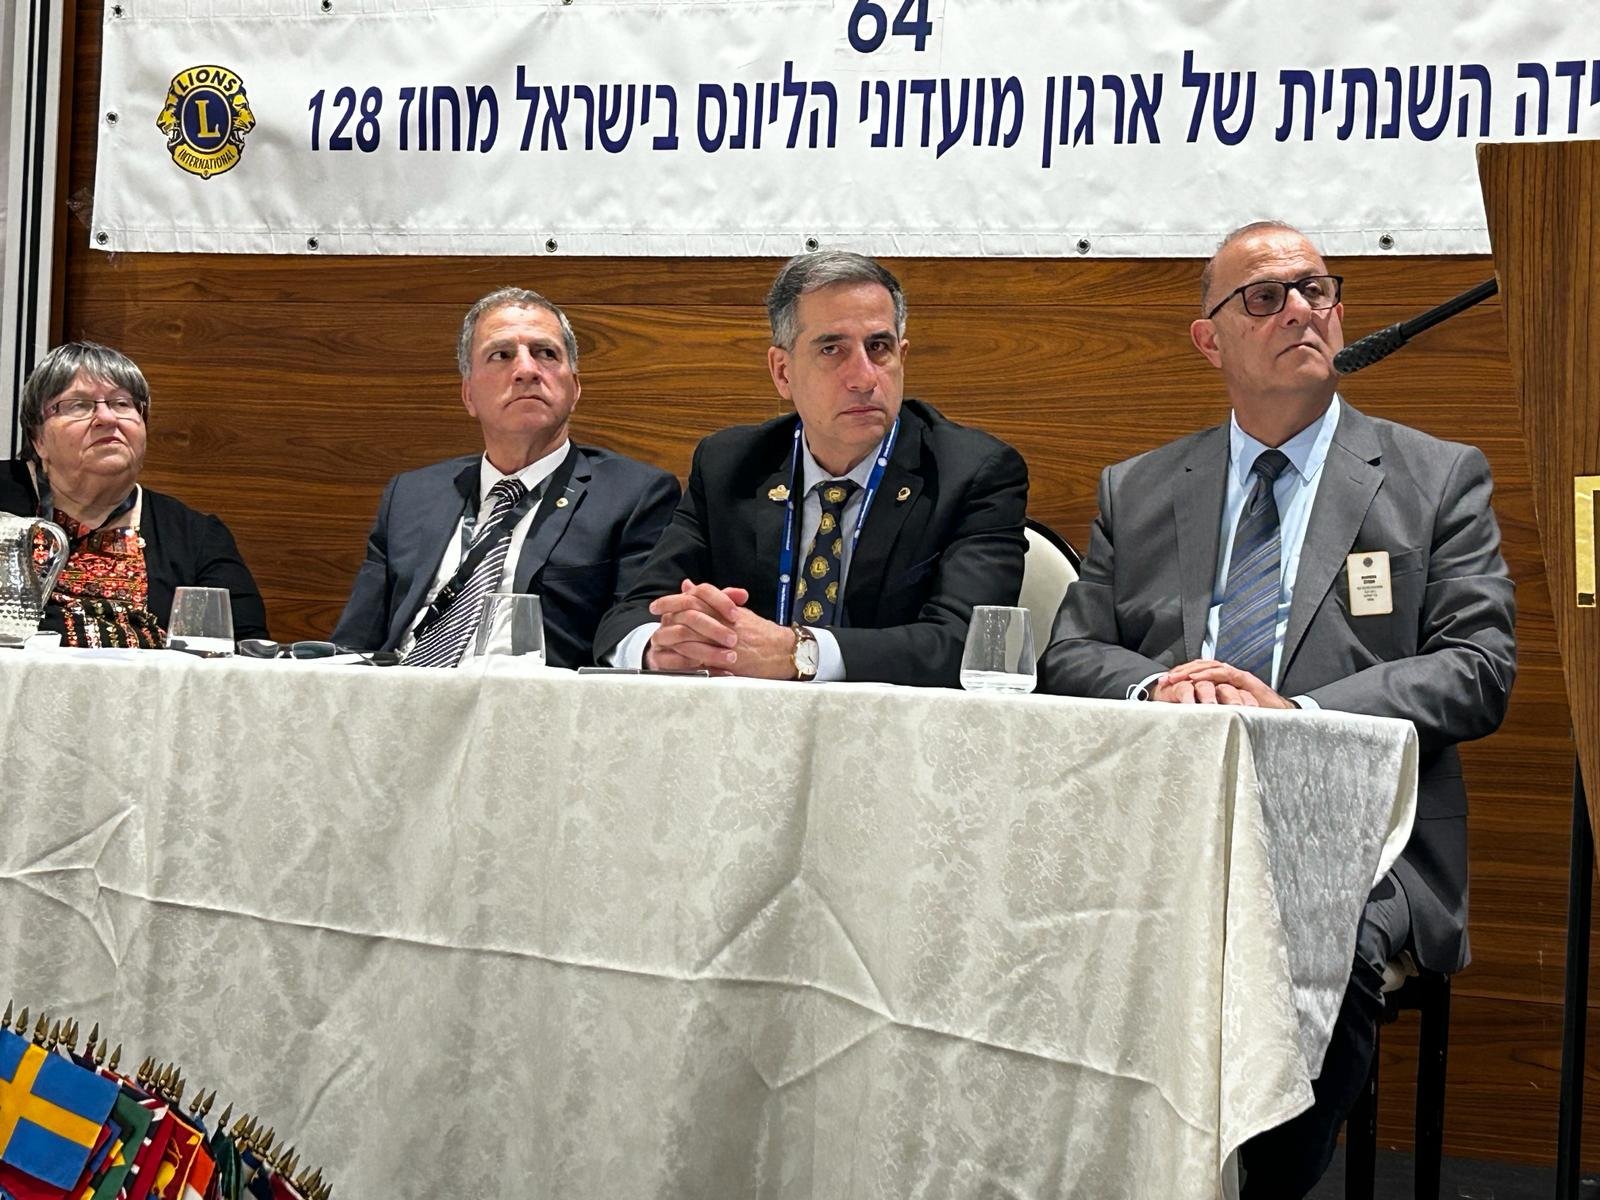 مدينة الناصرة تستضيف المؤتمر الـ 64 لنوادي الليونز في اسرائيل وانتخاب حسام سلمان رئيسا جديدا-9